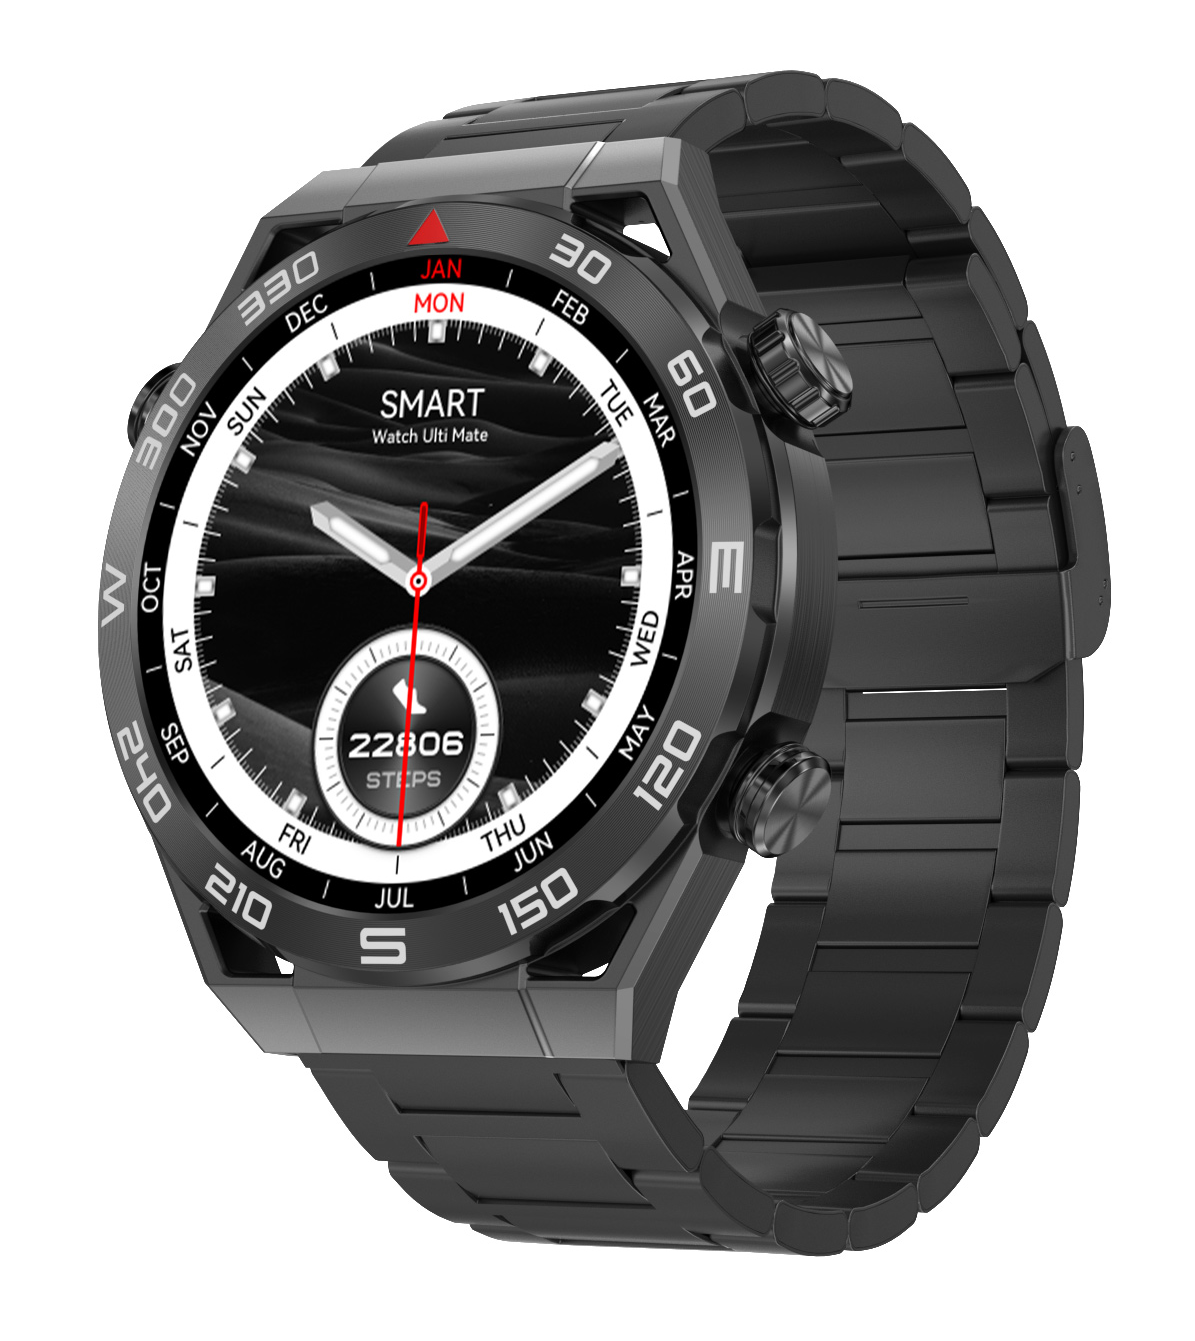 Cмарт-часы Smart Watch DT Ultra Mate